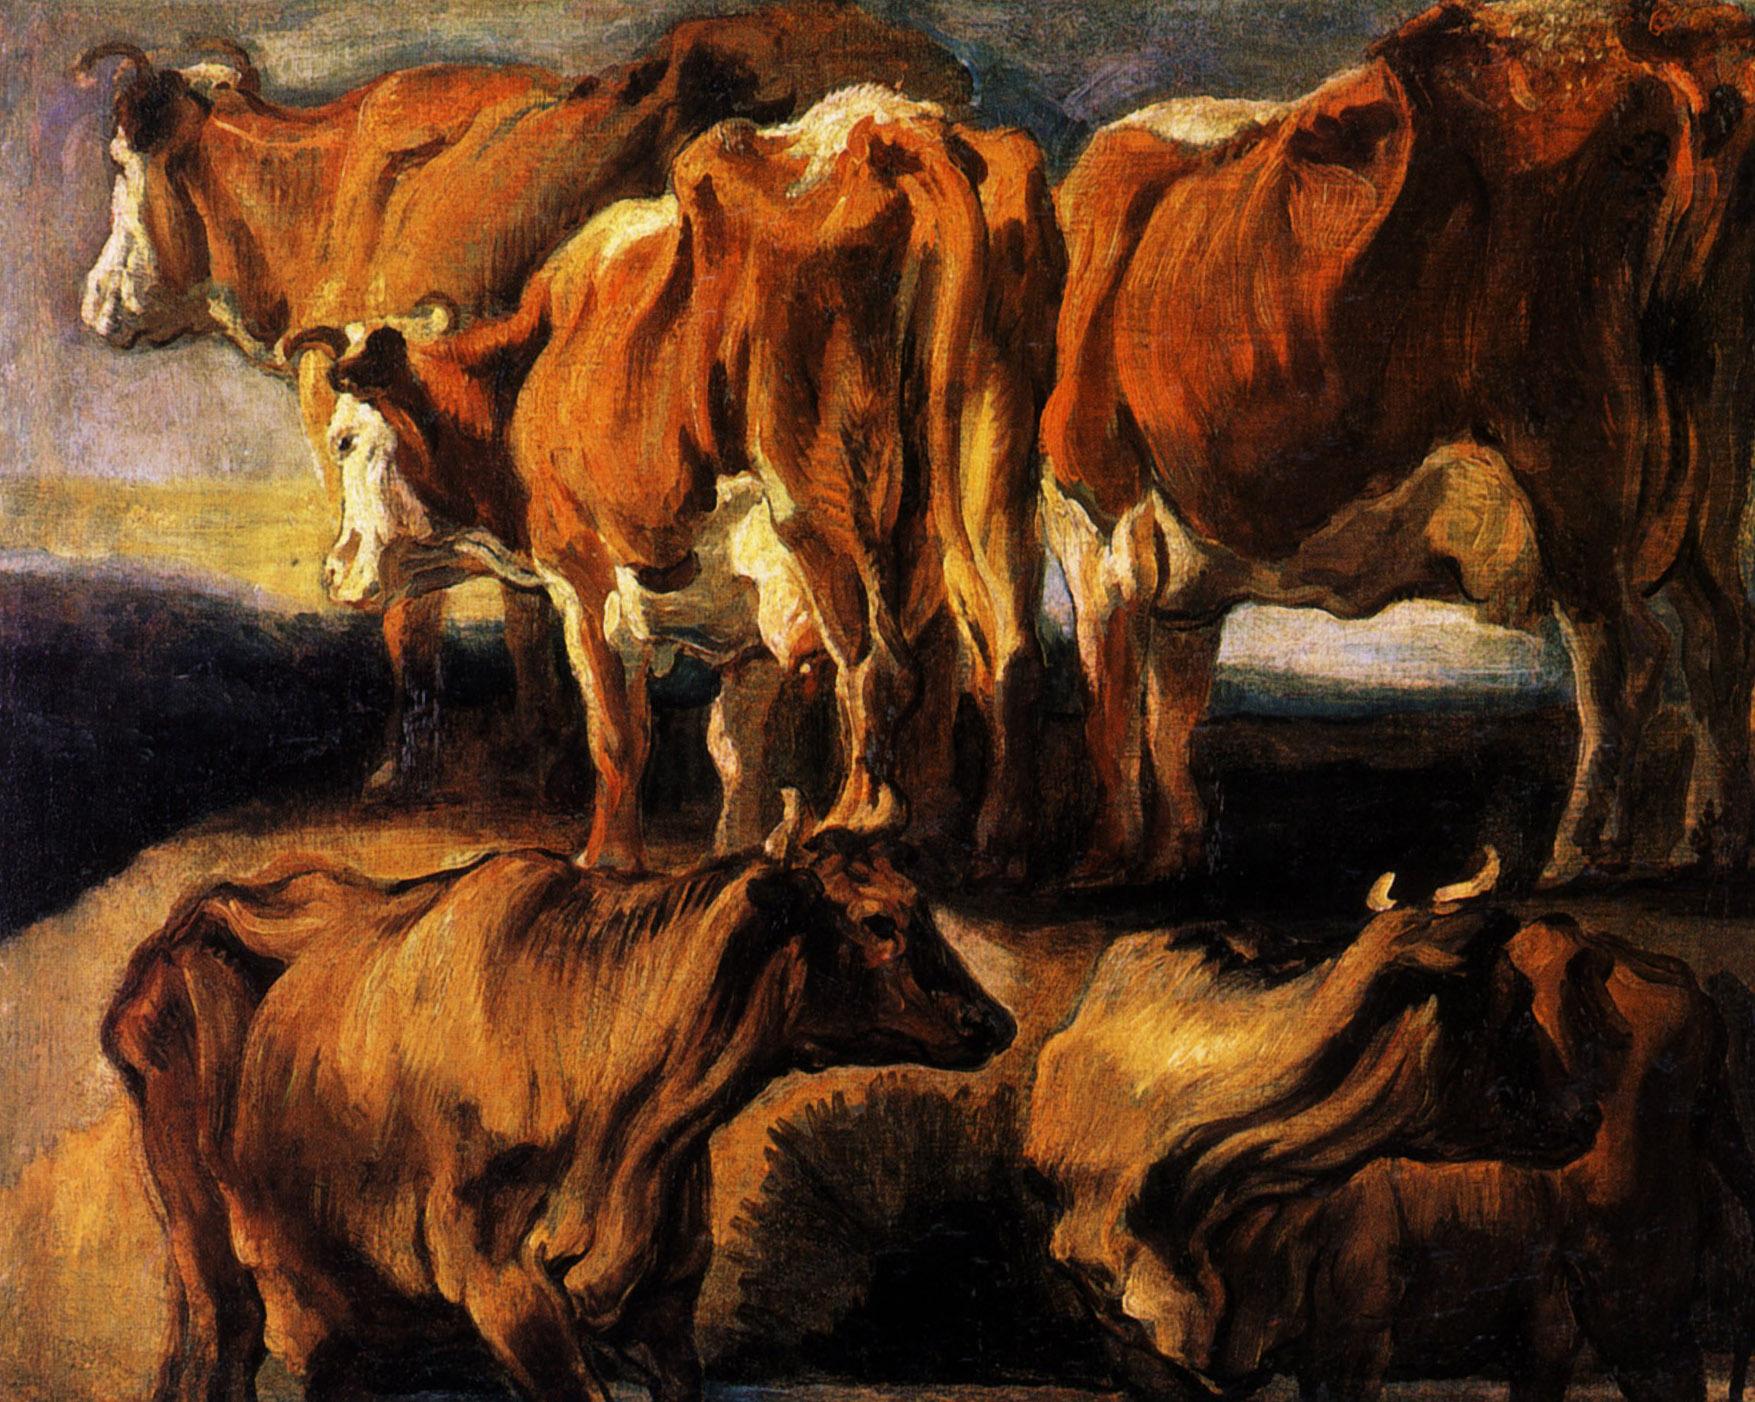 Йорданс Якоб. Изображения коровы на холсте. 1924